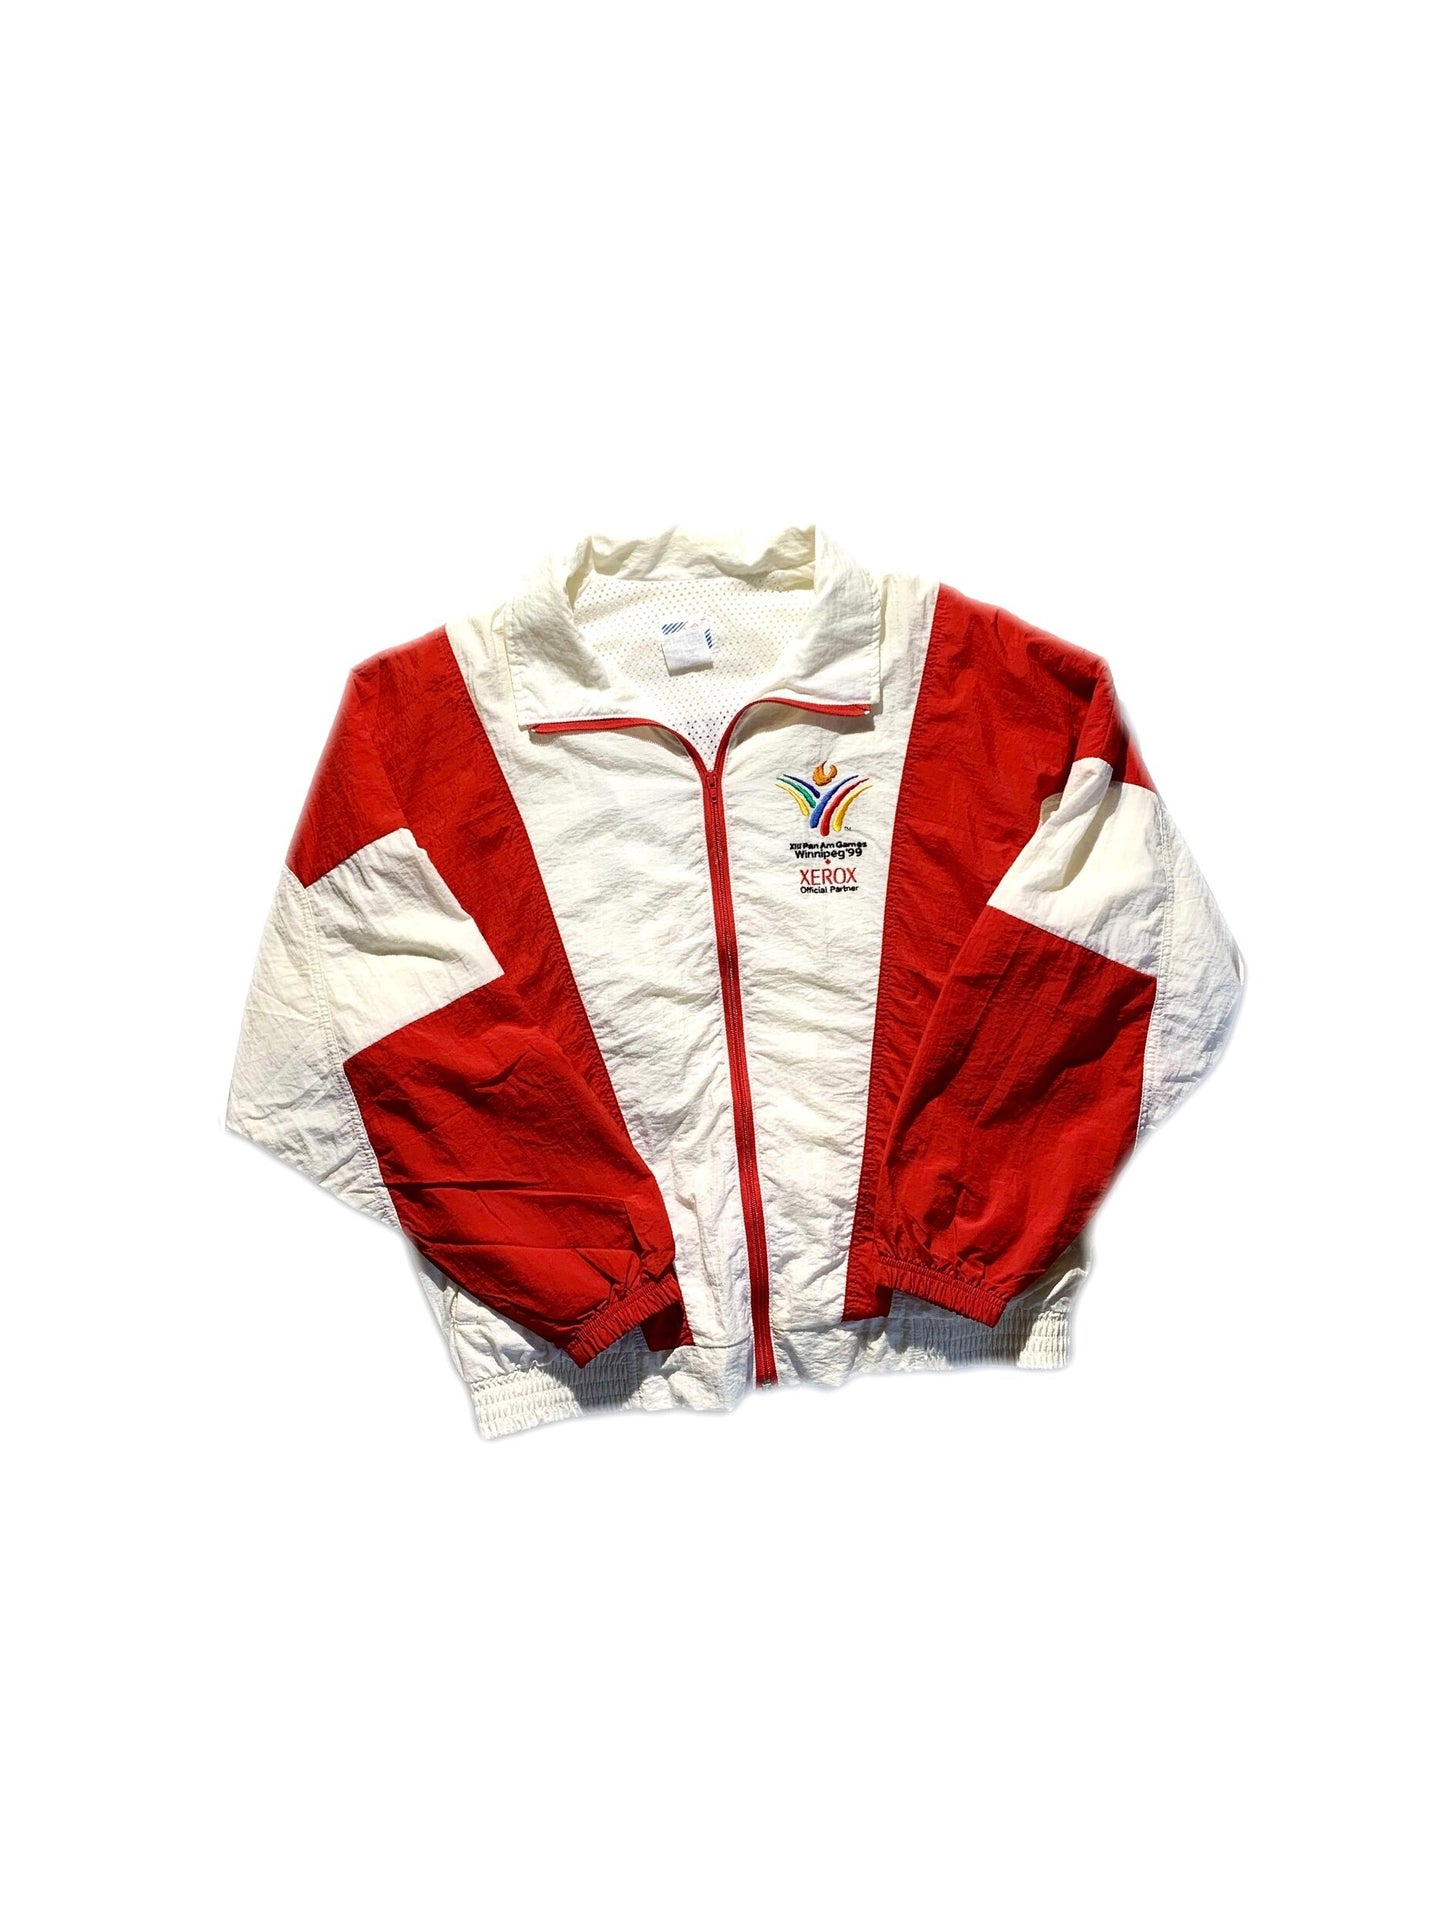 Vintage Windbreaker Jacket Pan Am Games (XEROX)